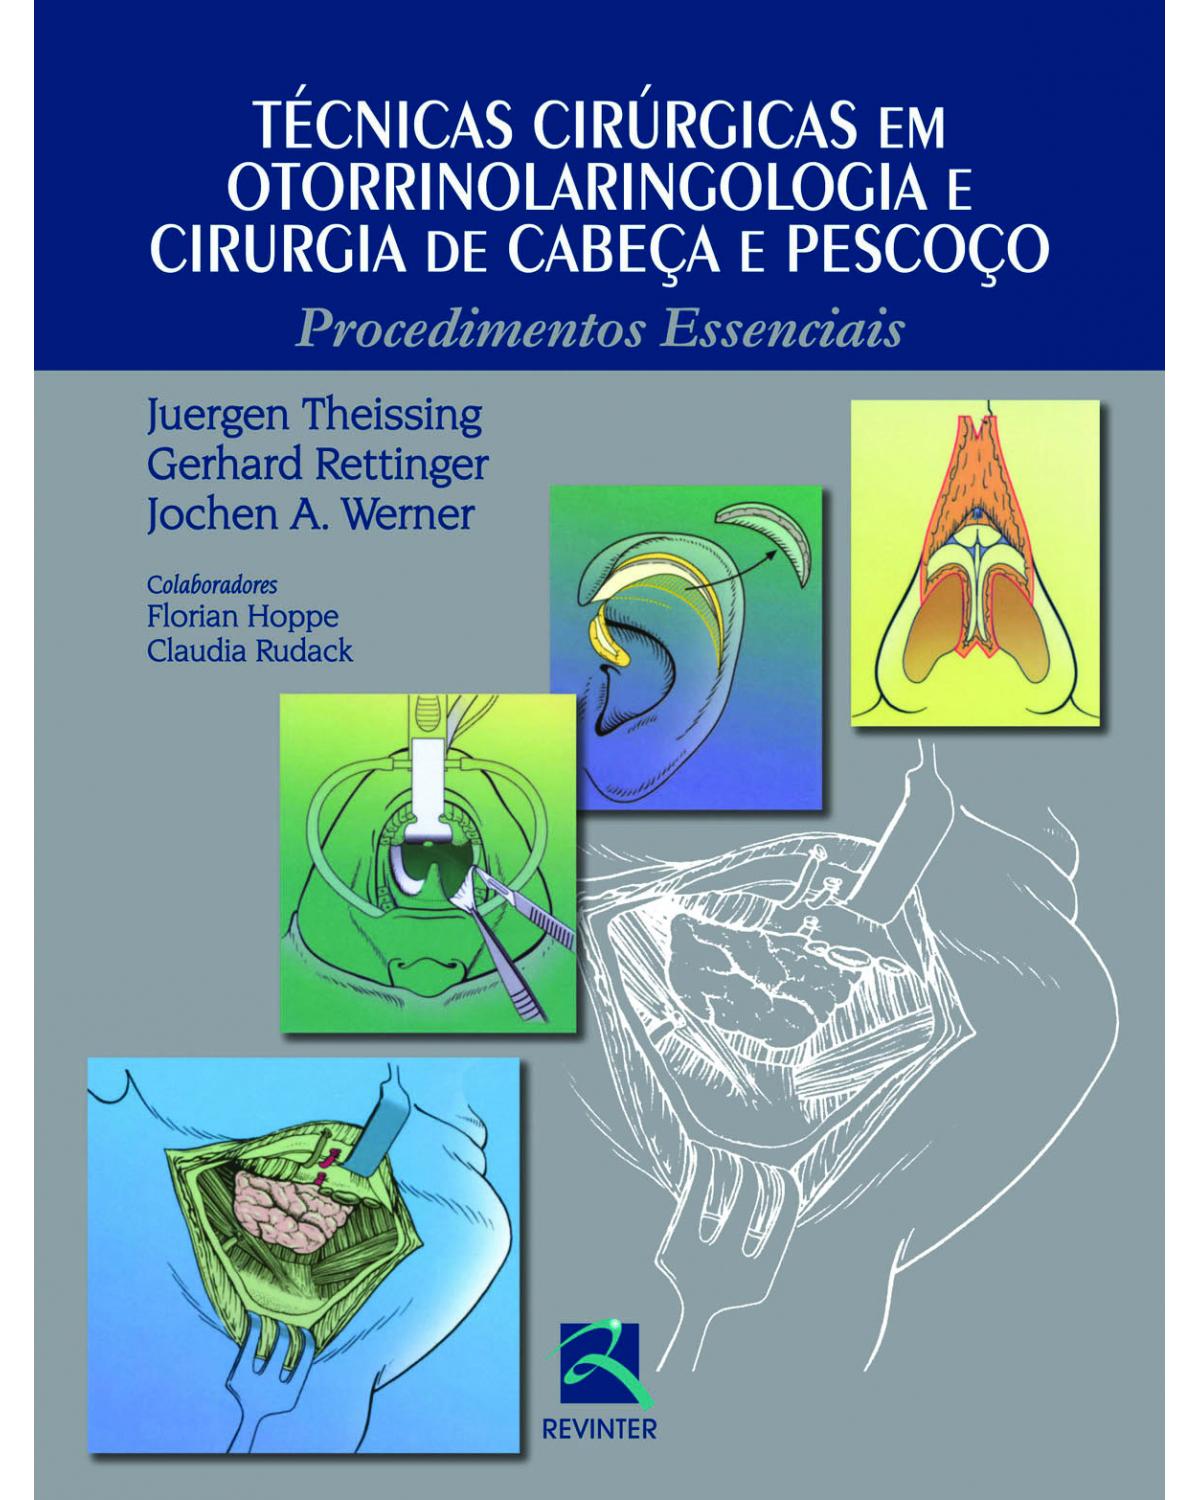 Técnicas cirúrgicas em otorrinolaringologia e cirurgia de cabeça e pescoço - procedimentos essenciais - 1ª Edição | 2013